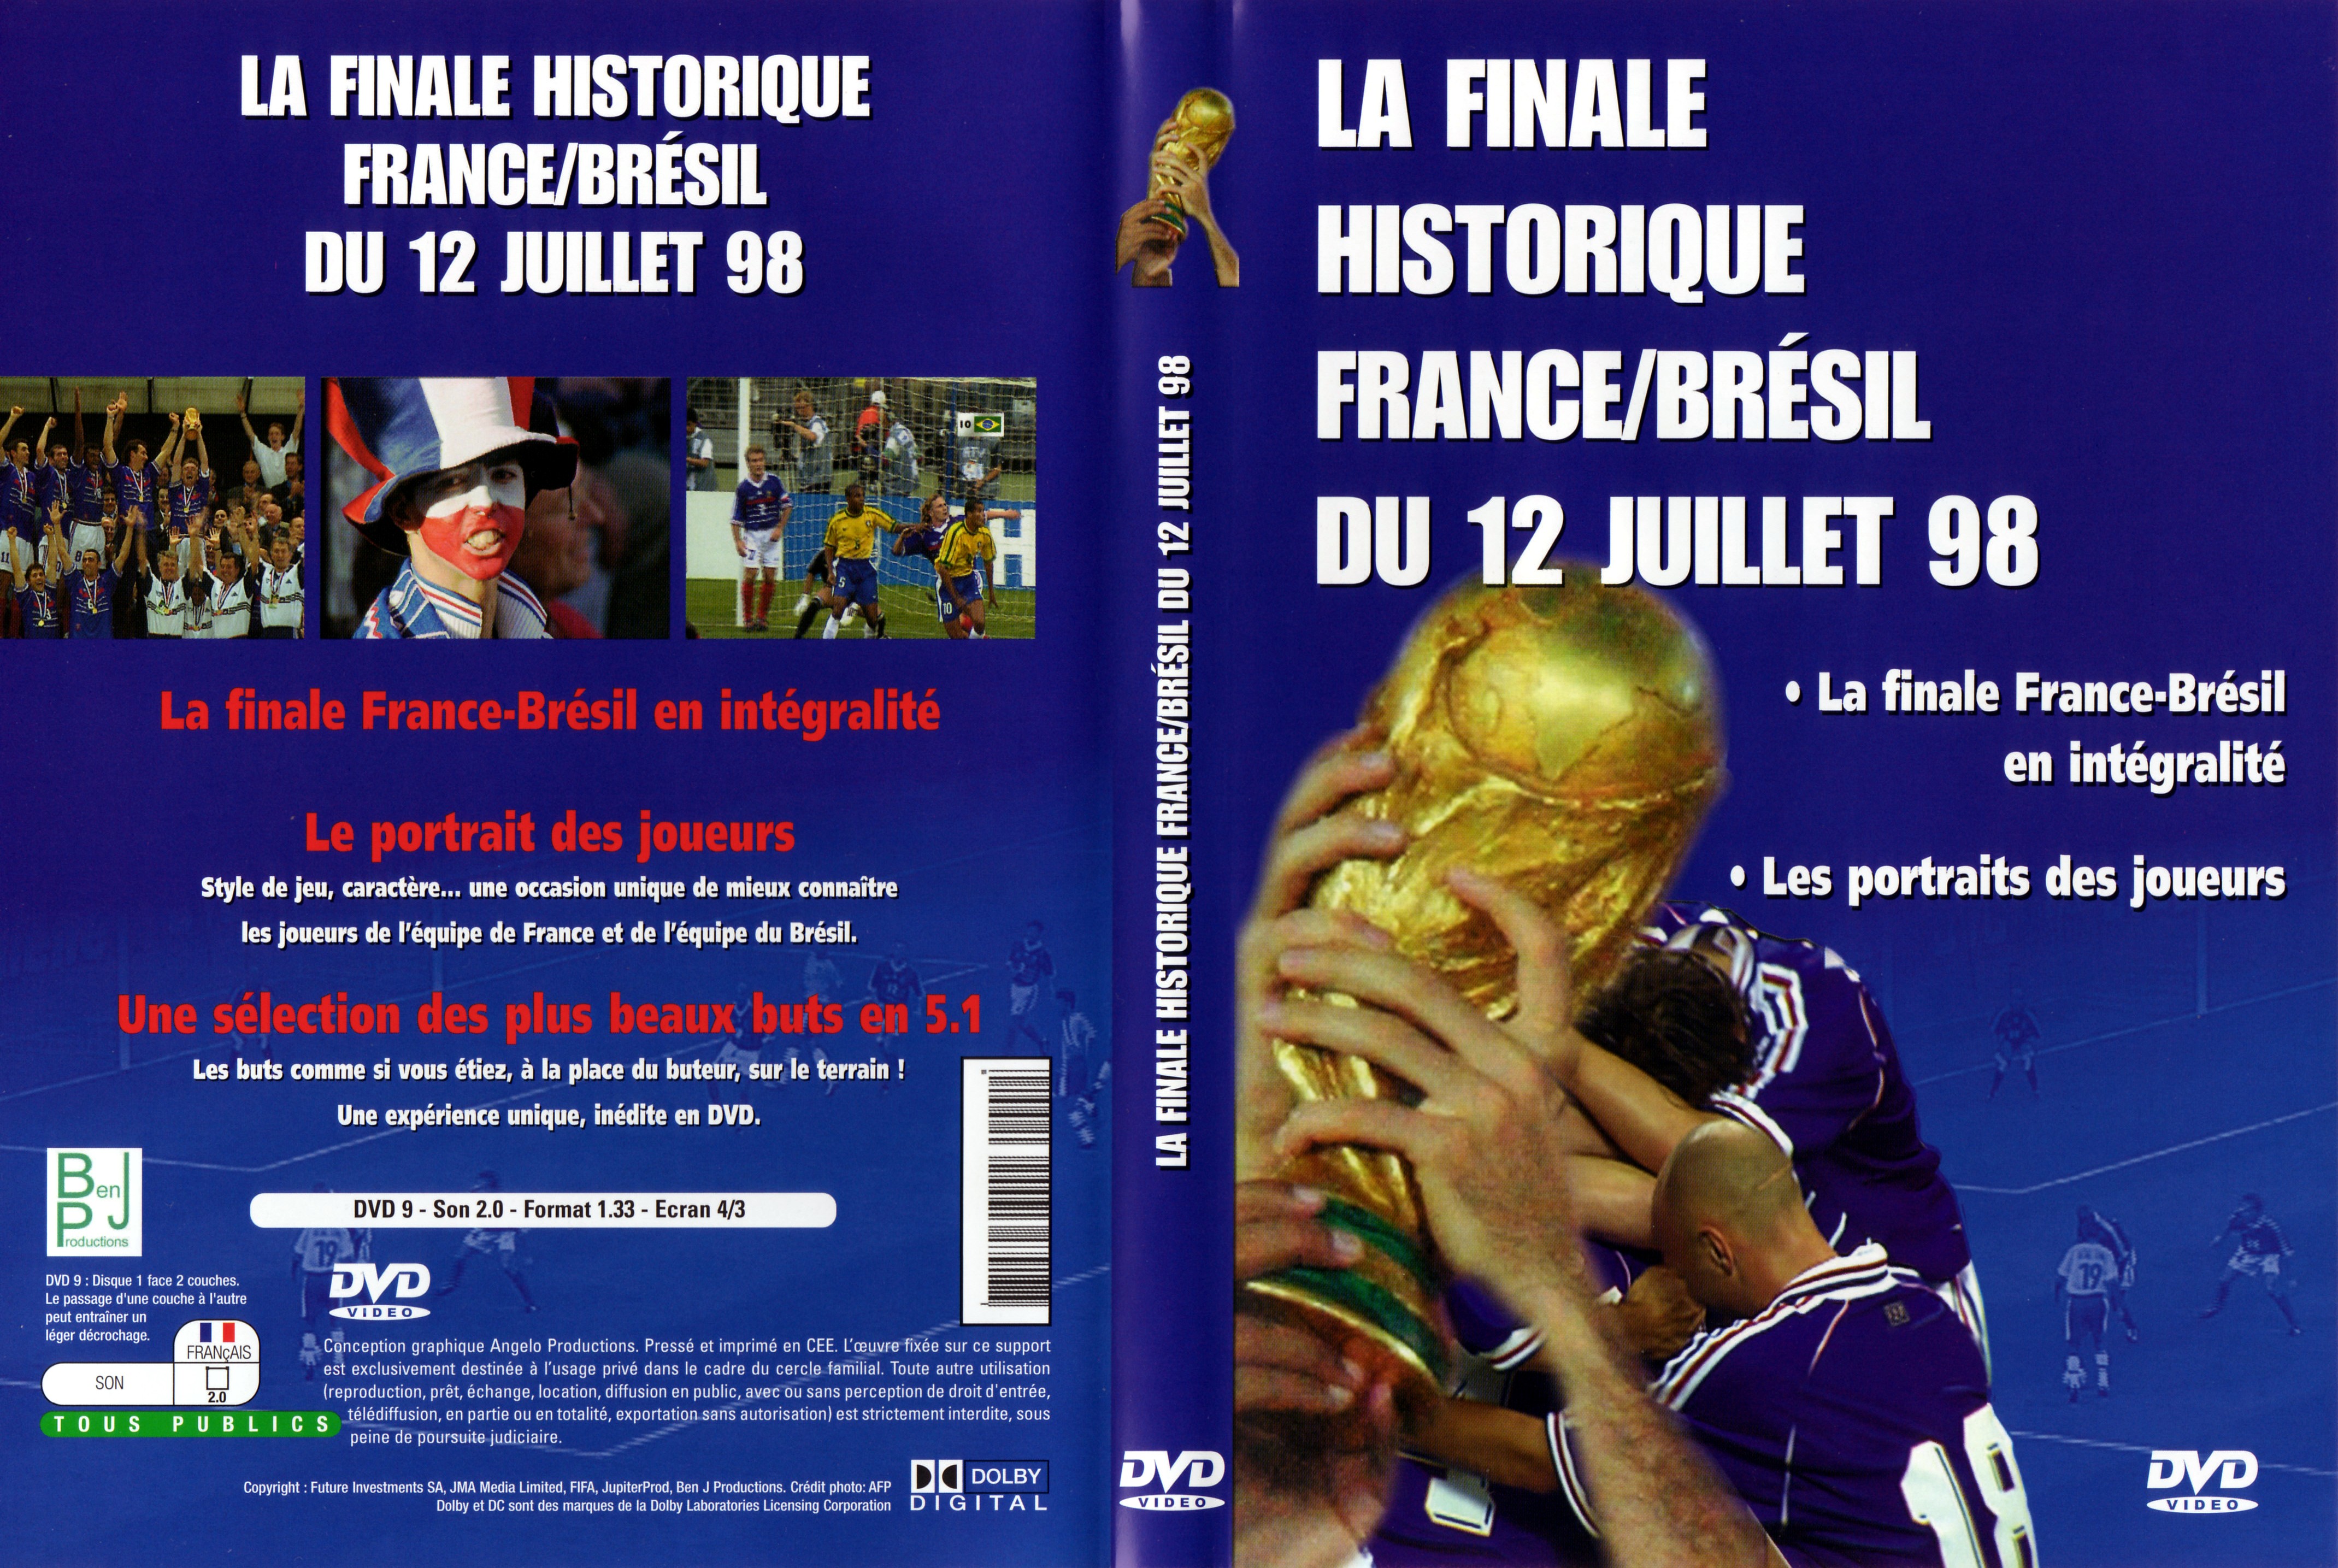 Jaquette DVD La finale historique FranceBrsil du 12 Juillet 98